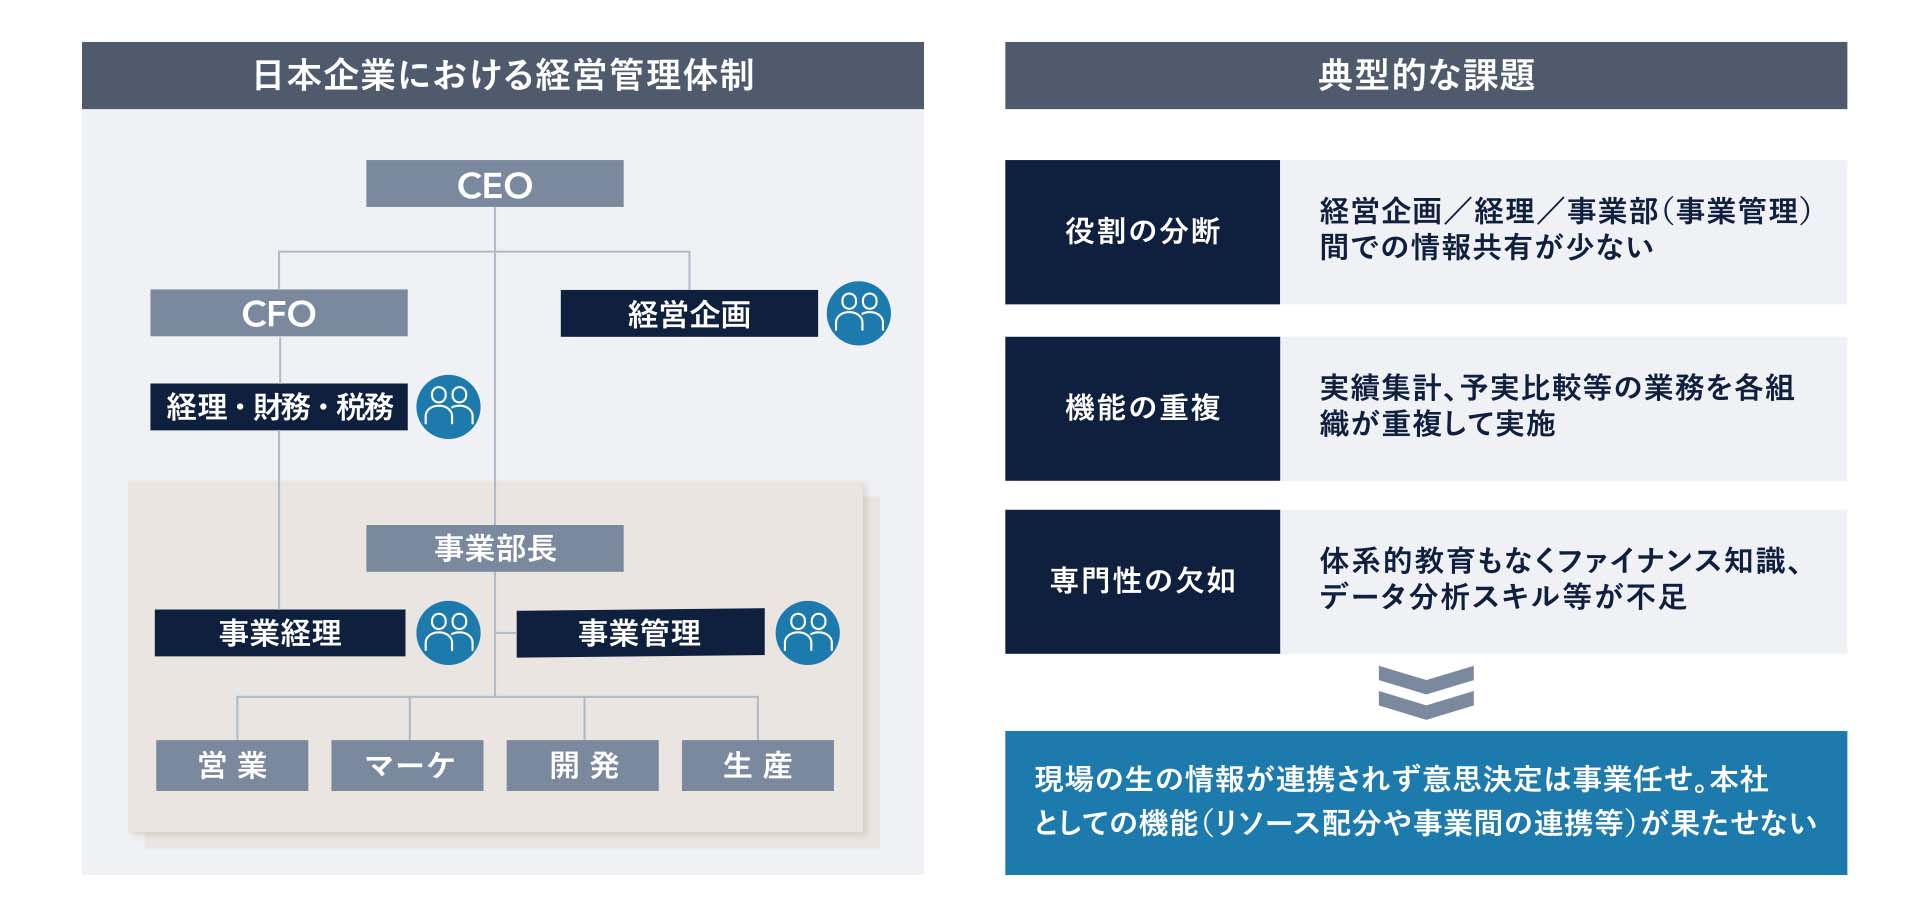 図1：日本企業の経営管理体制と典型的な課題